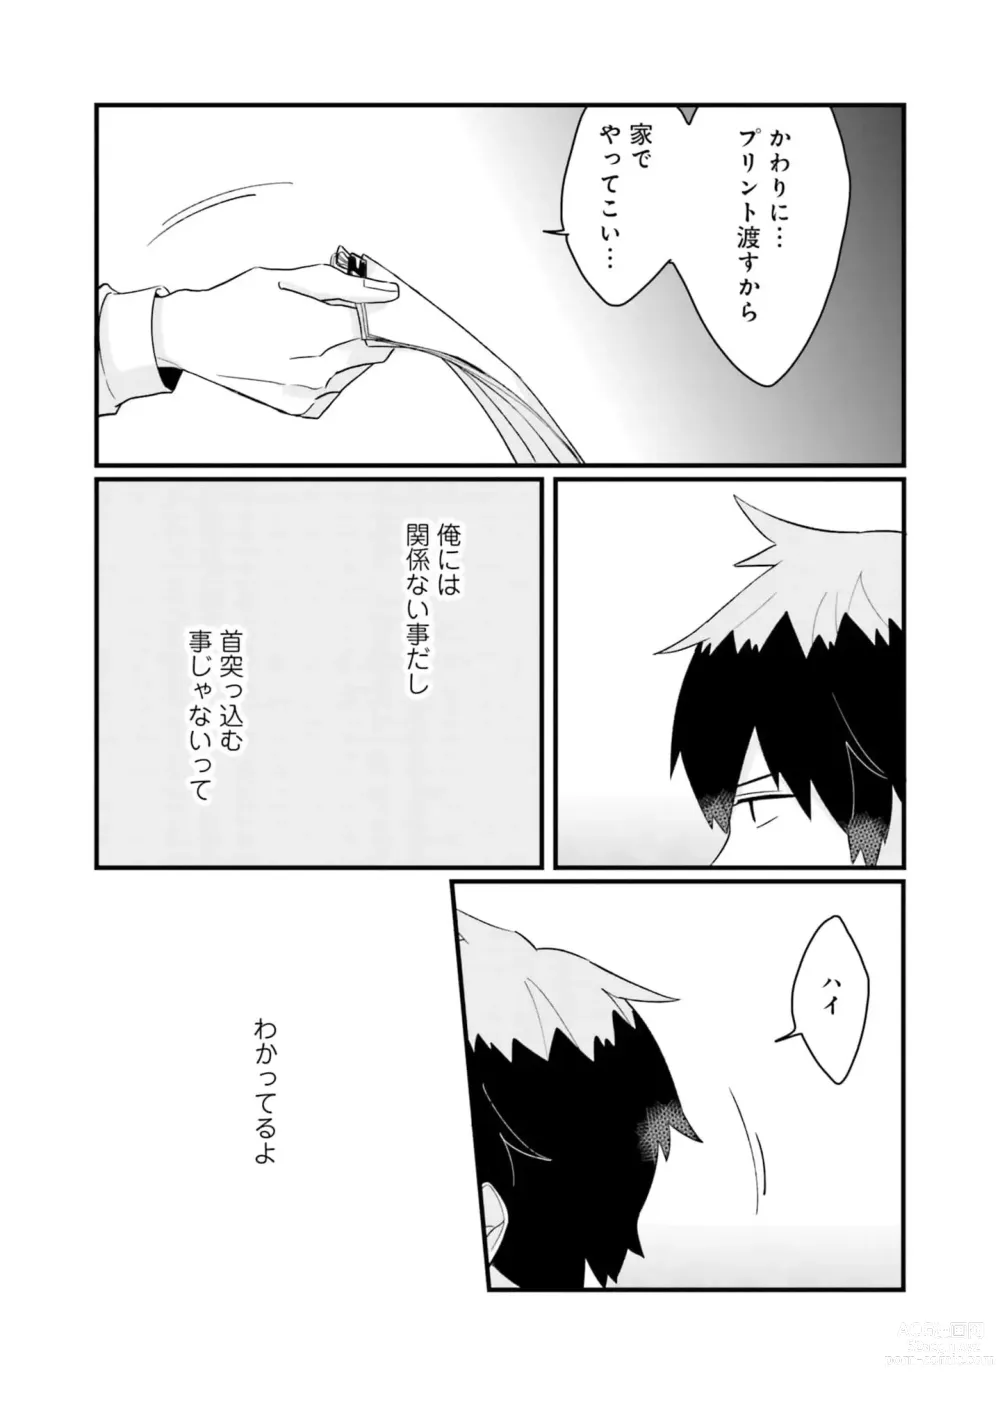 Page 31 of manga Shishunki ni wa Me no Doku desu